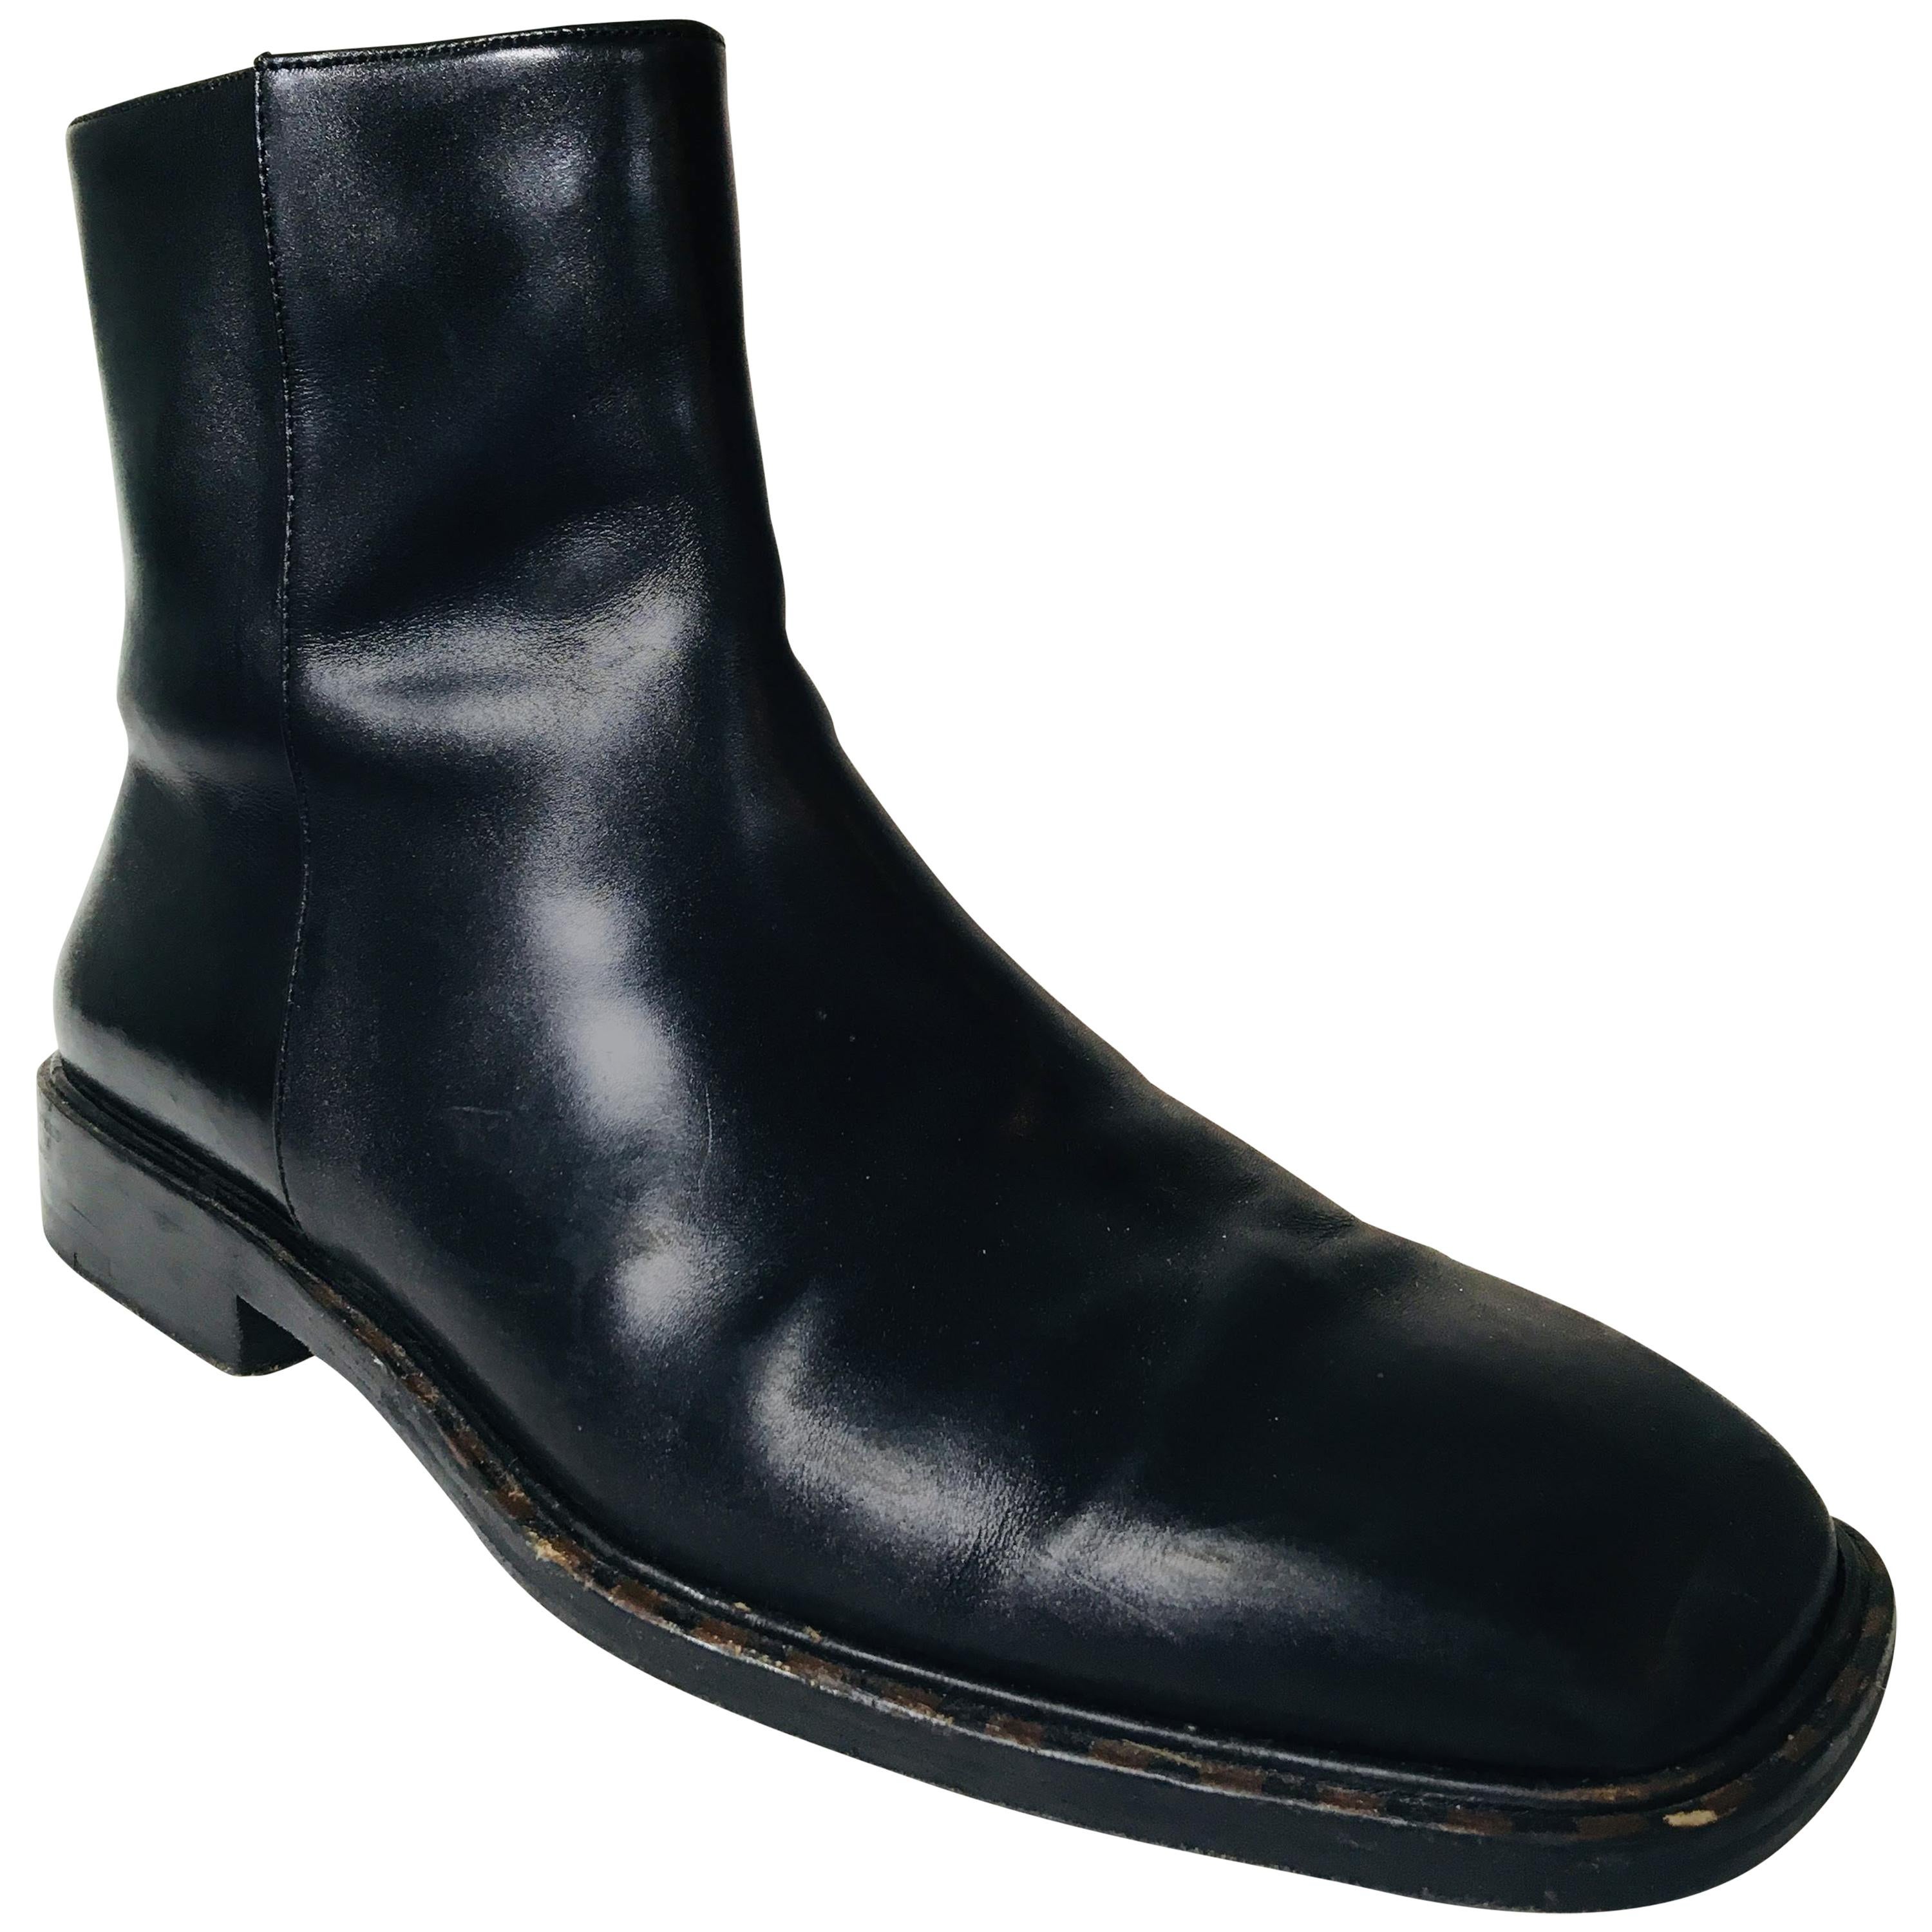 Black Louis Vuitton Boots Men - 4 For Sale on 1stDibs  lv men's boots, louis  vuitton cowboy boots men's, louis vuitton boot men